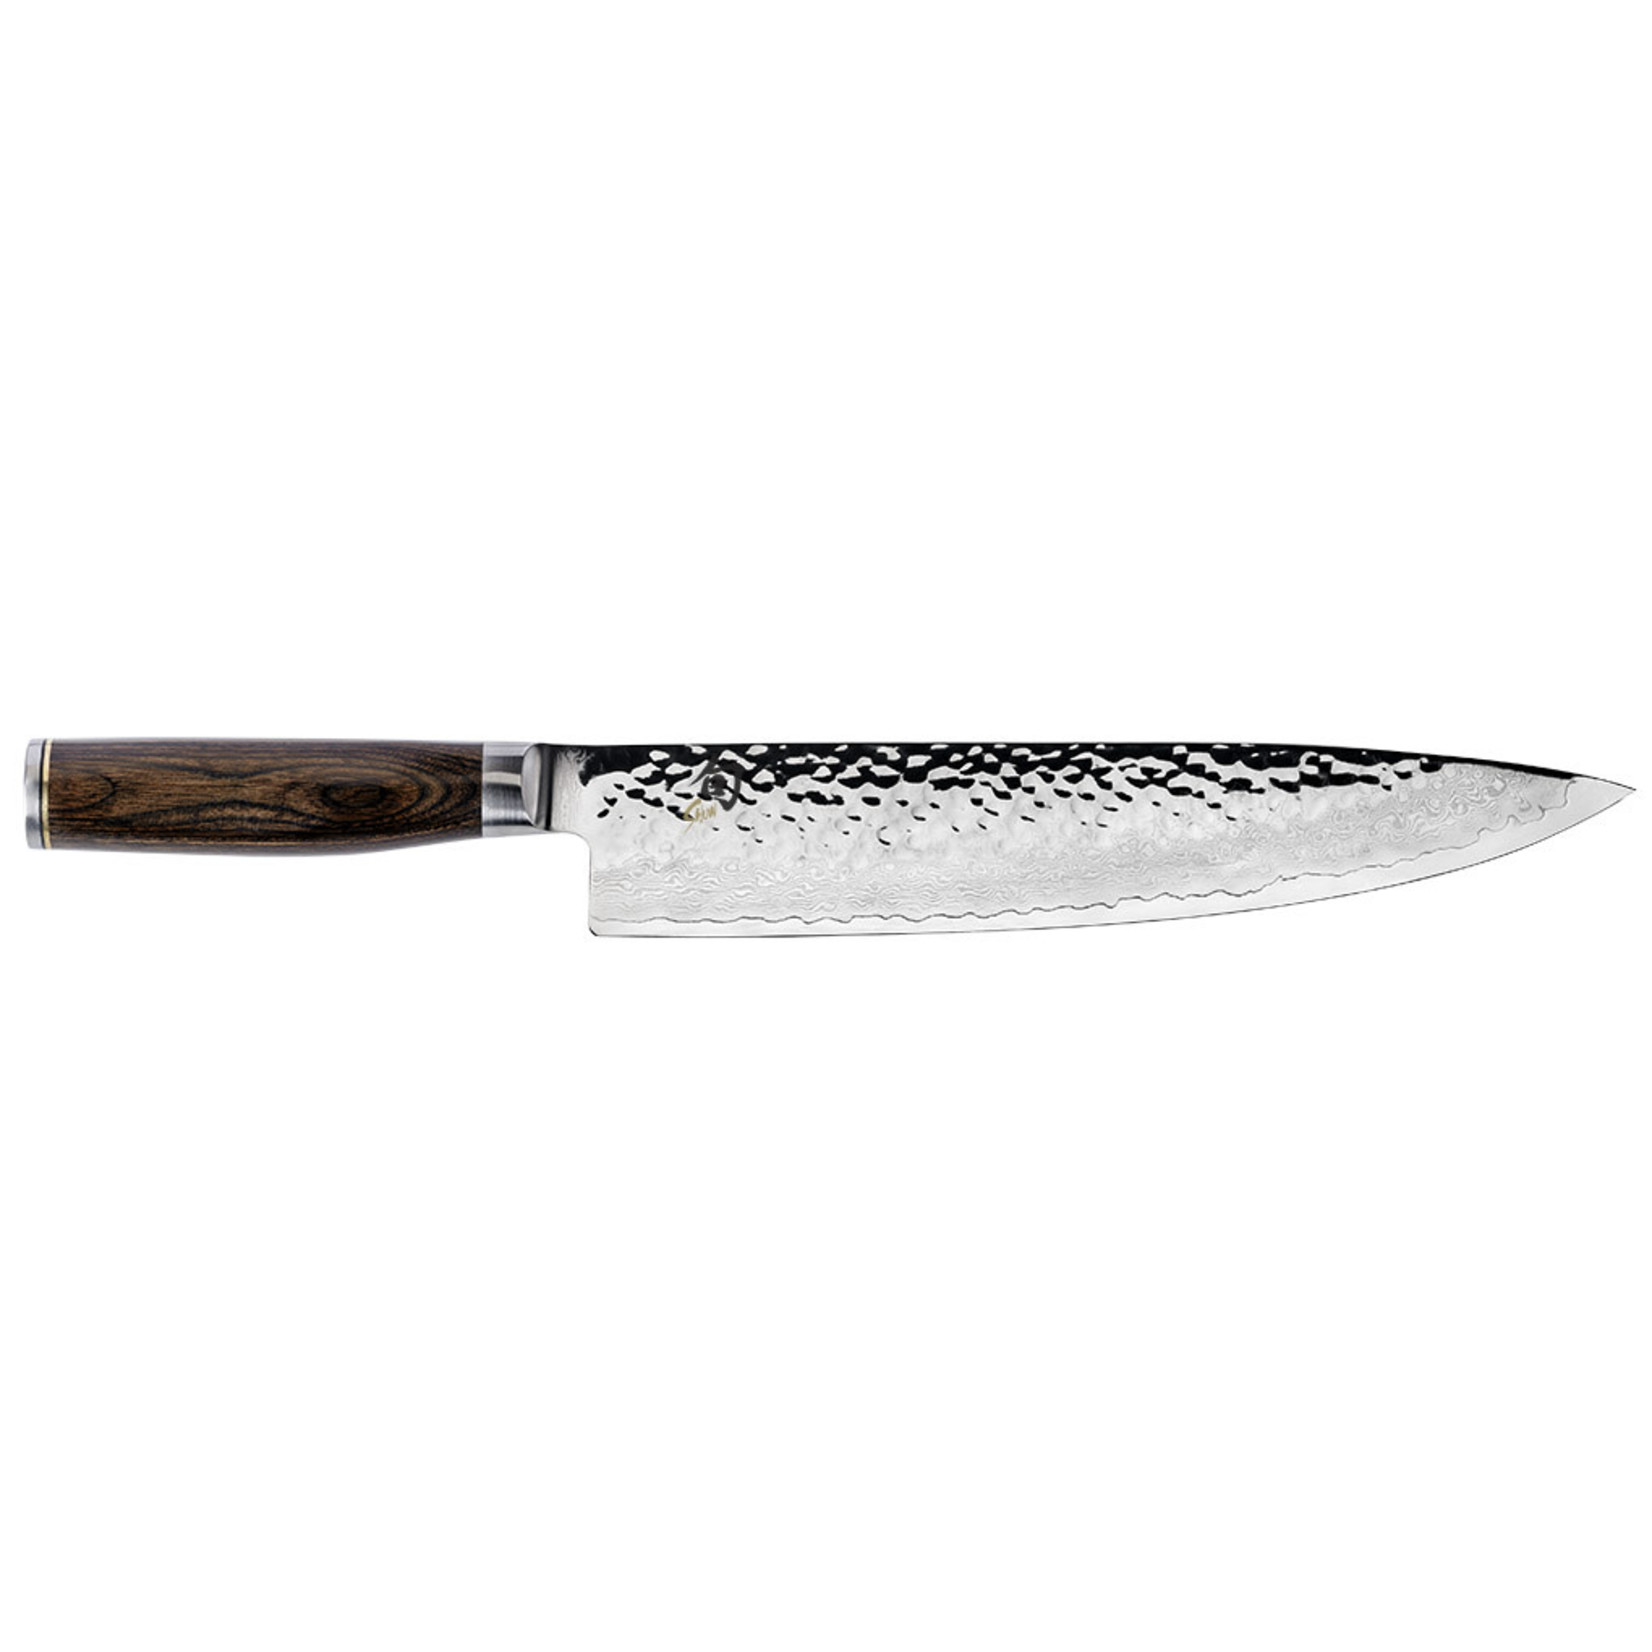 SHUN SHUN Premier Chef's Knife 10"